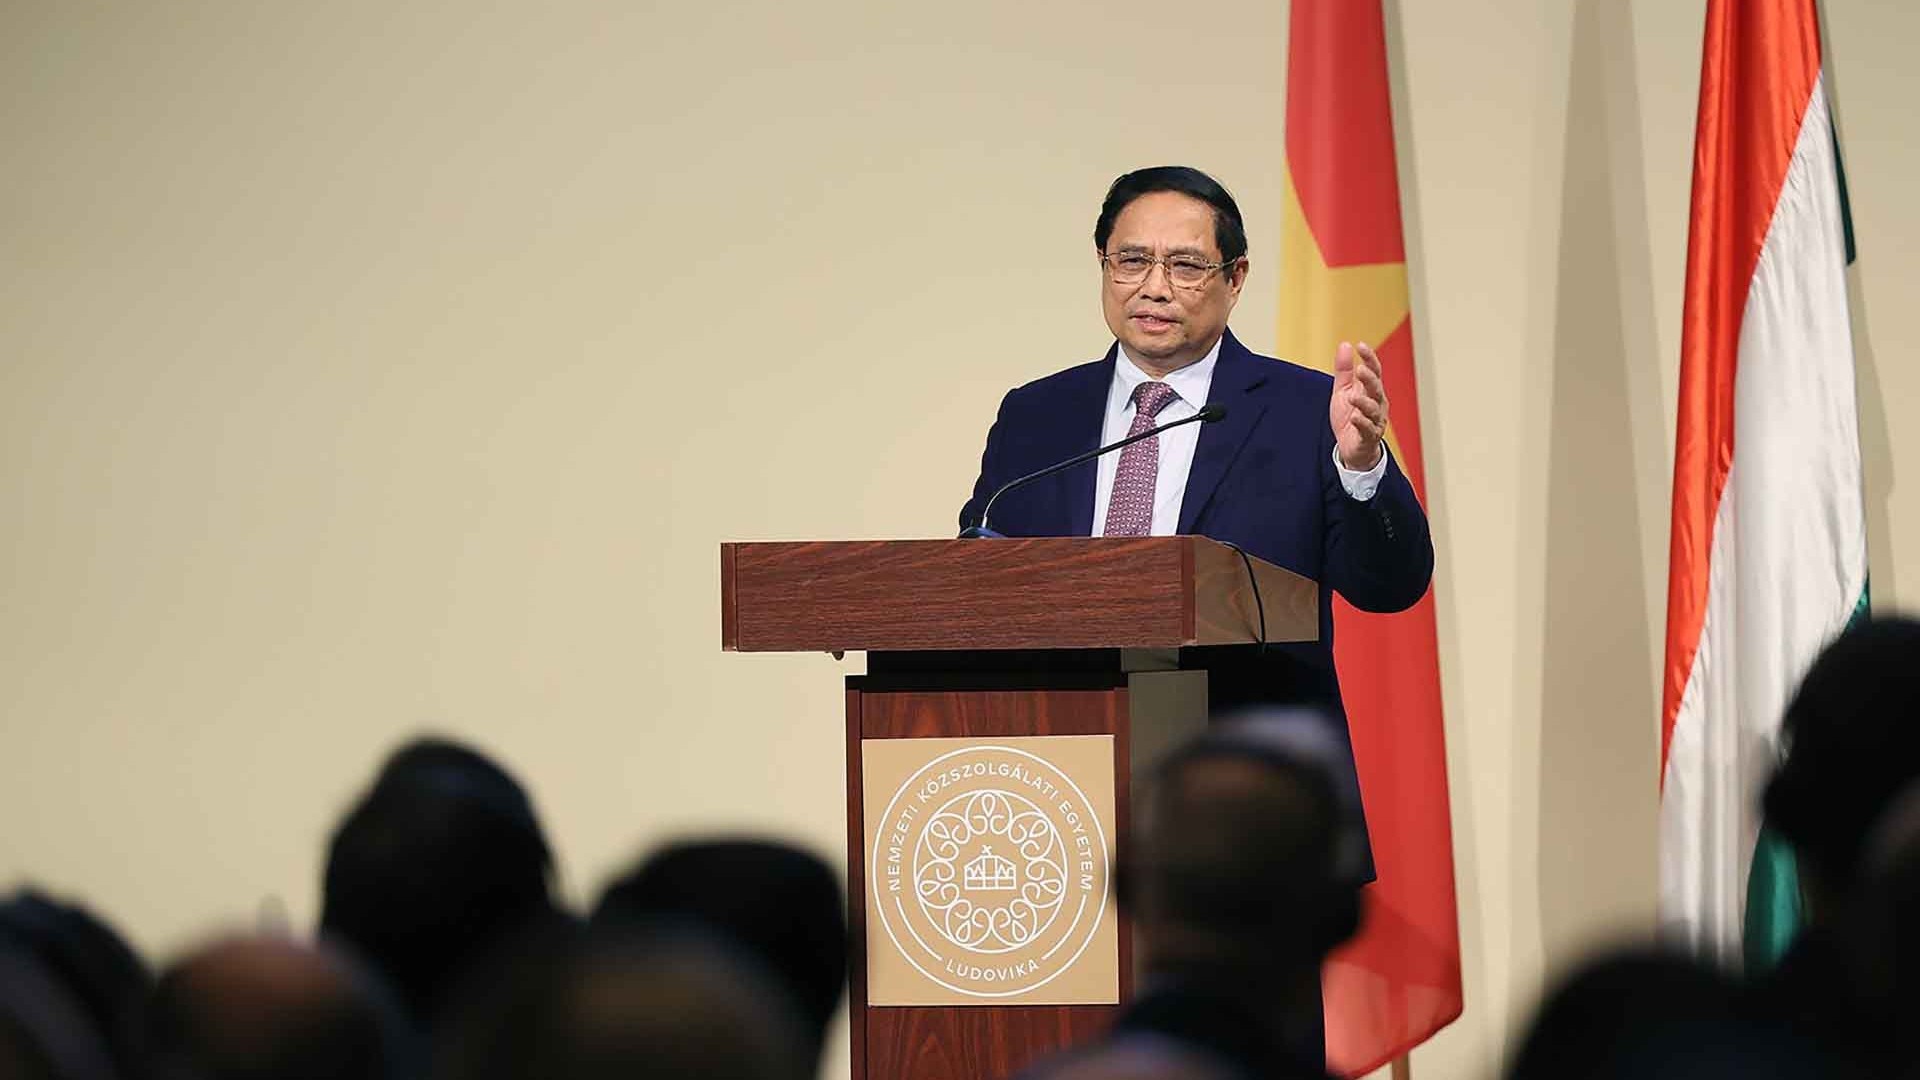 Thủ tướng Phạm Minh Chính phát biểu về chính sách tại Đại học của Hungary